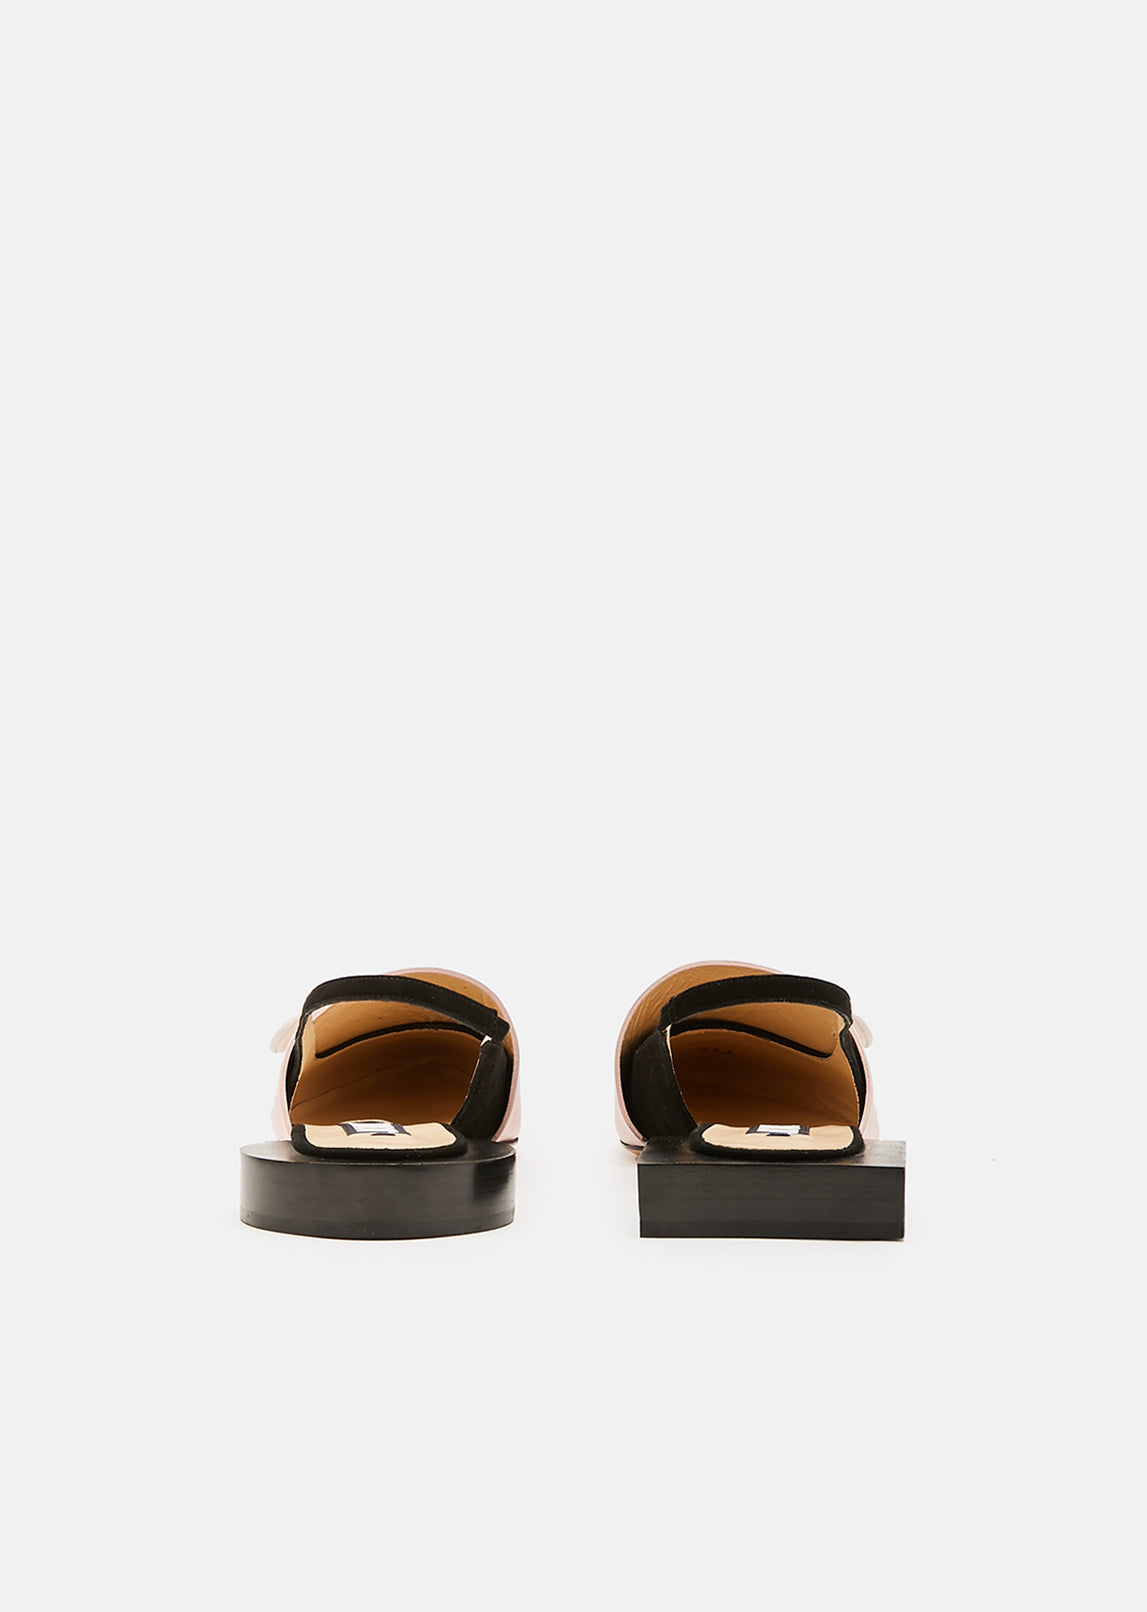 Leather Sandals with Buttons by Jacquemus- La Garçonne